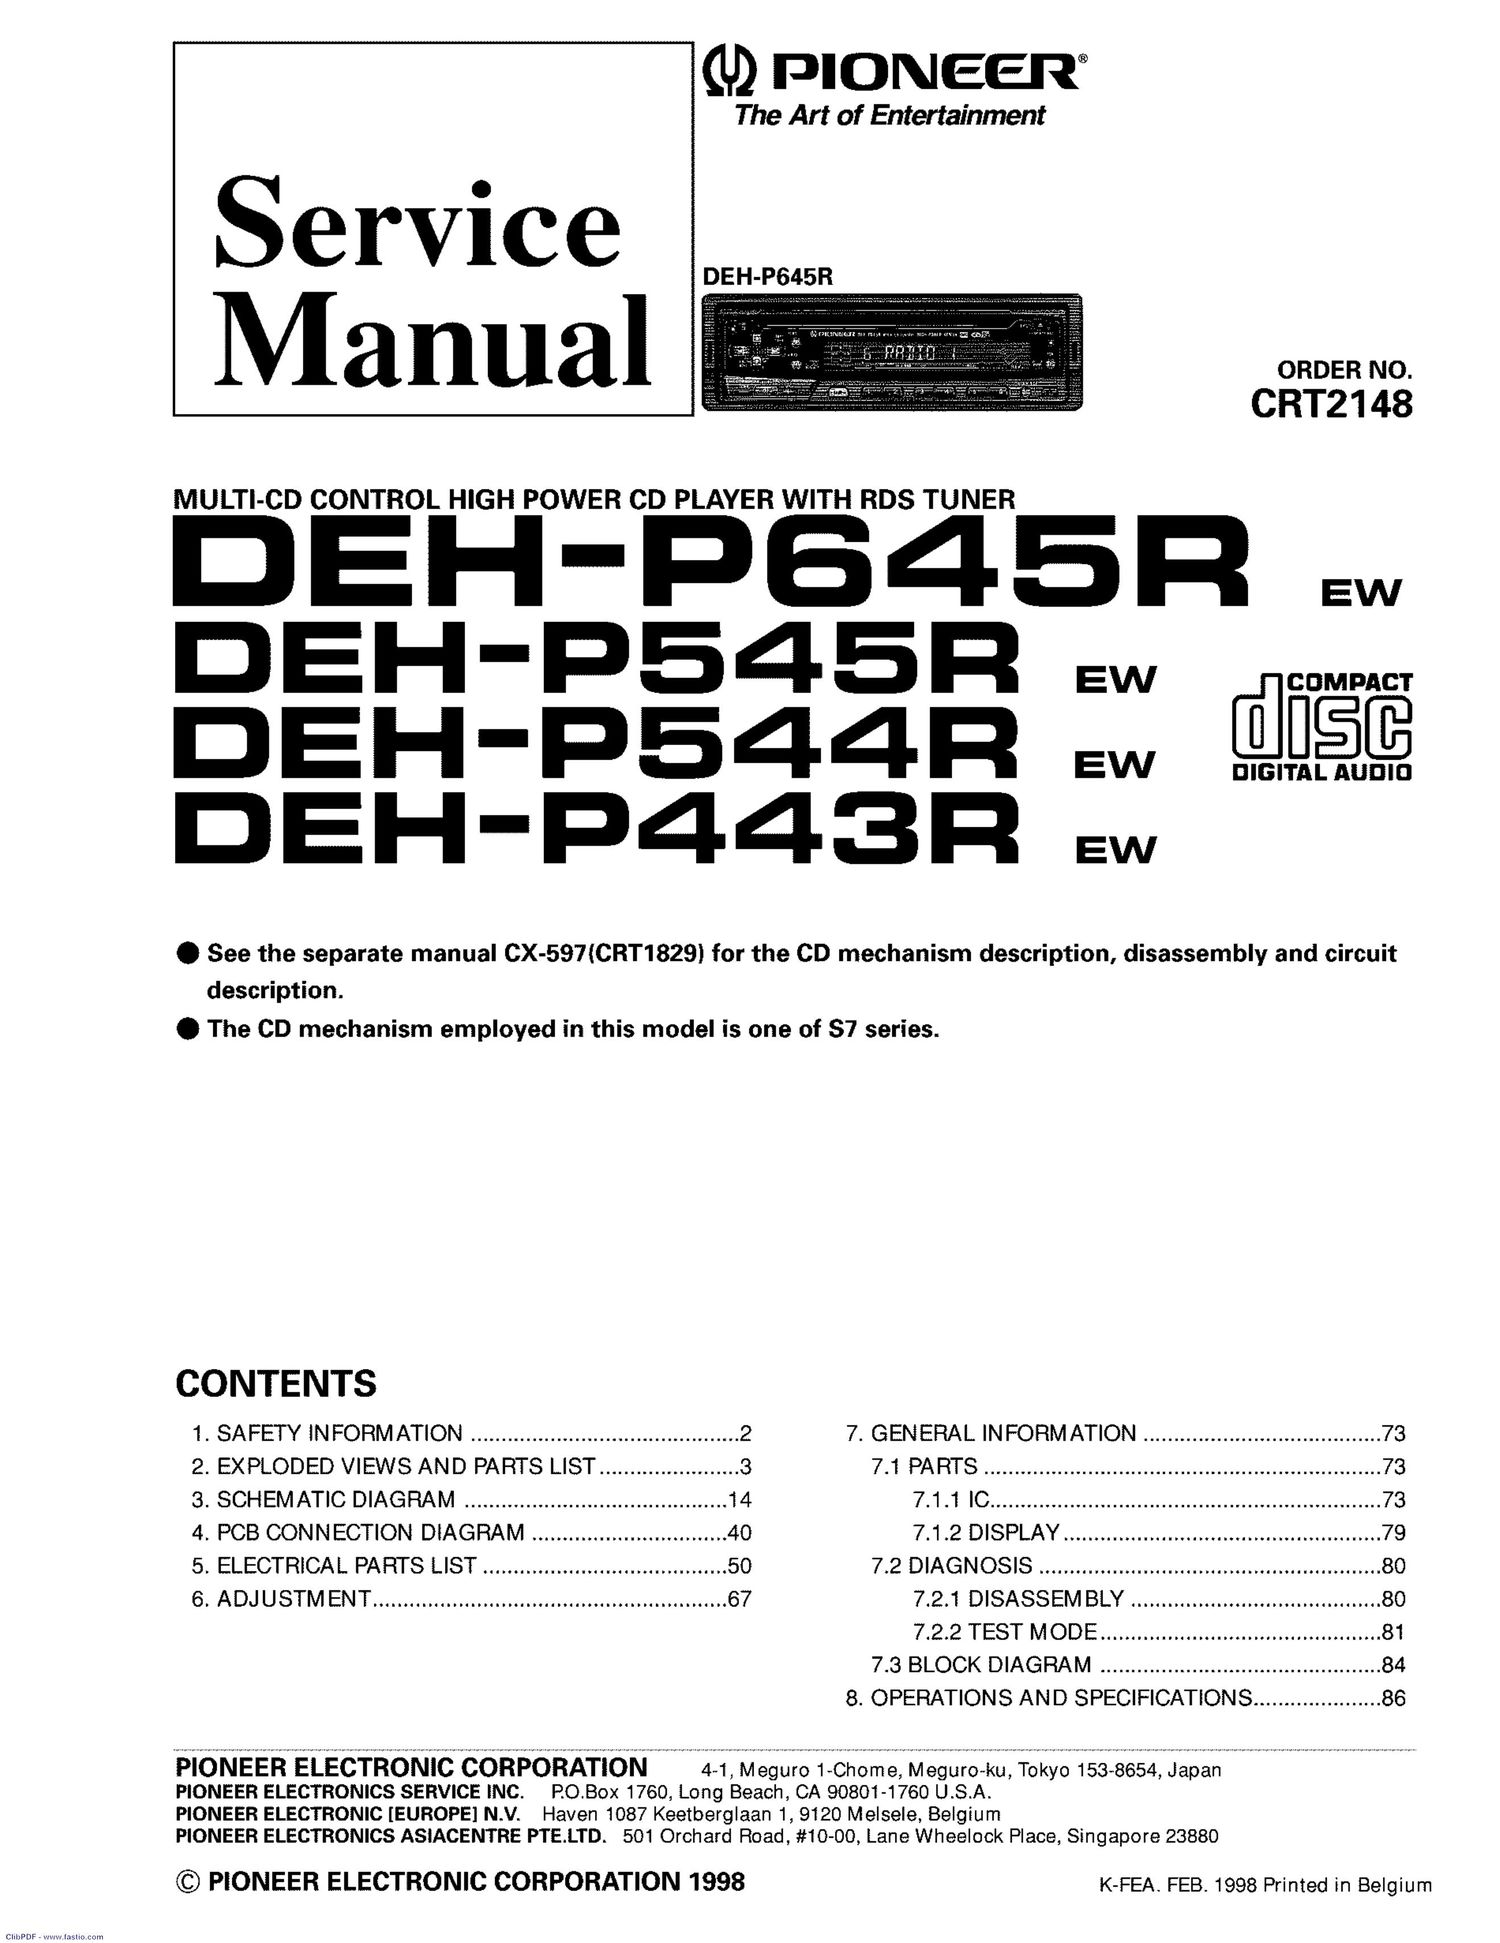 pioneer dehp 443 r service manual